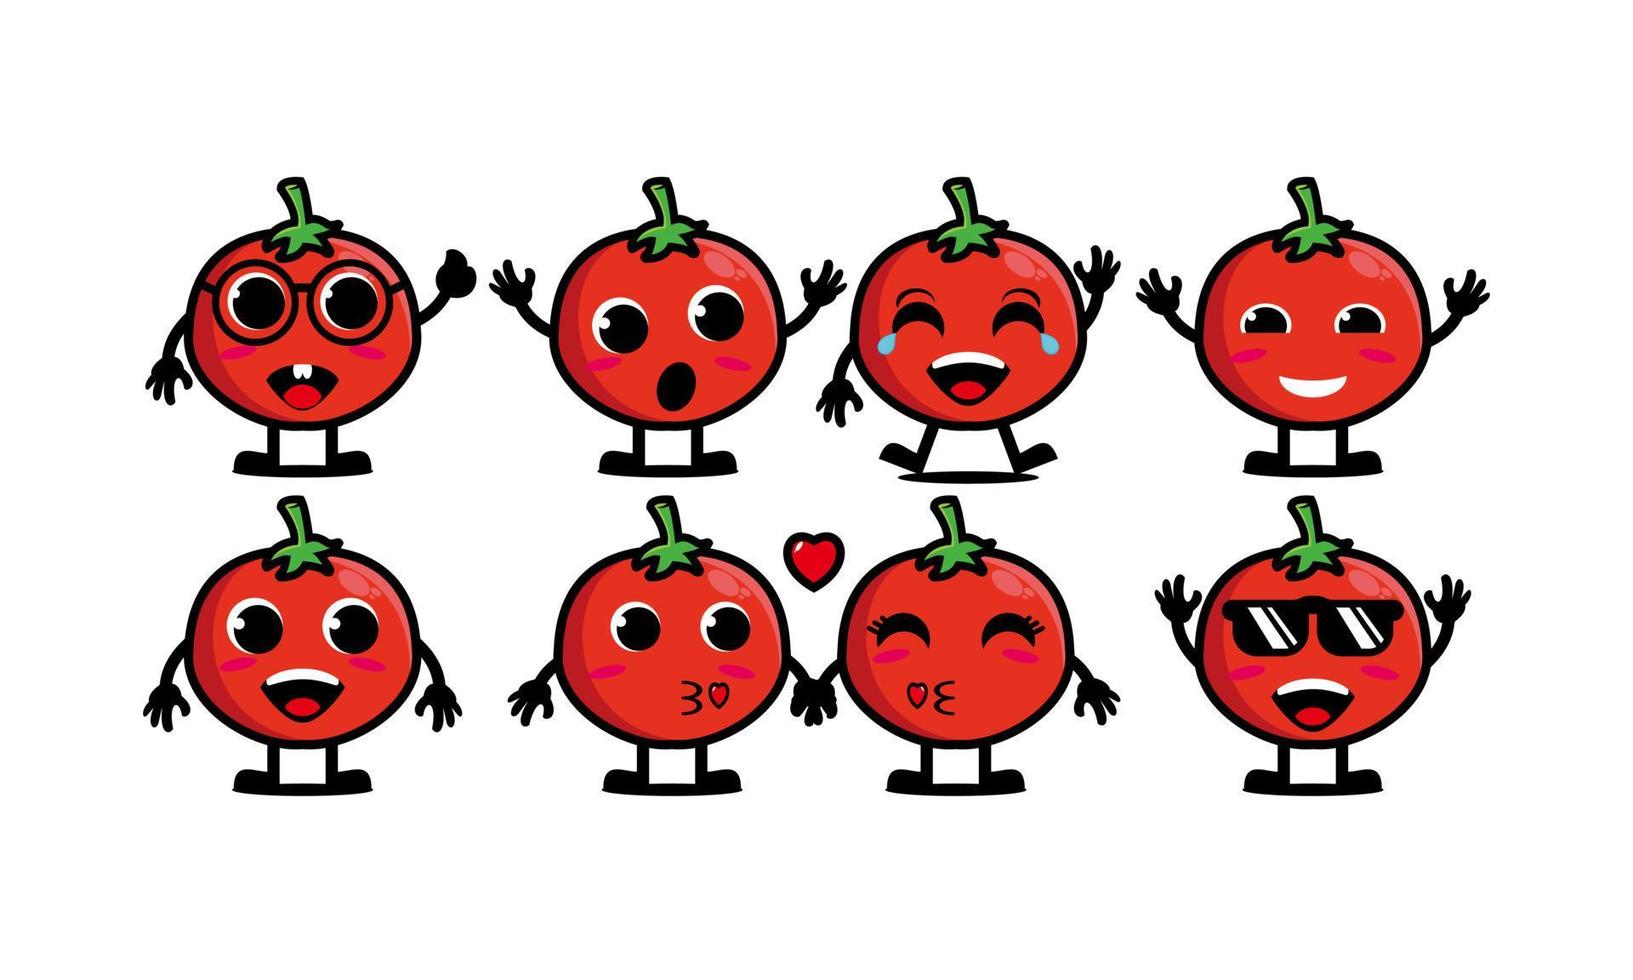 carino sorridente divertente set di pomodori collection.vector piatto cartone animato faccia personaggio mascotte illustrazione .isolato su sfondo bianco vettore